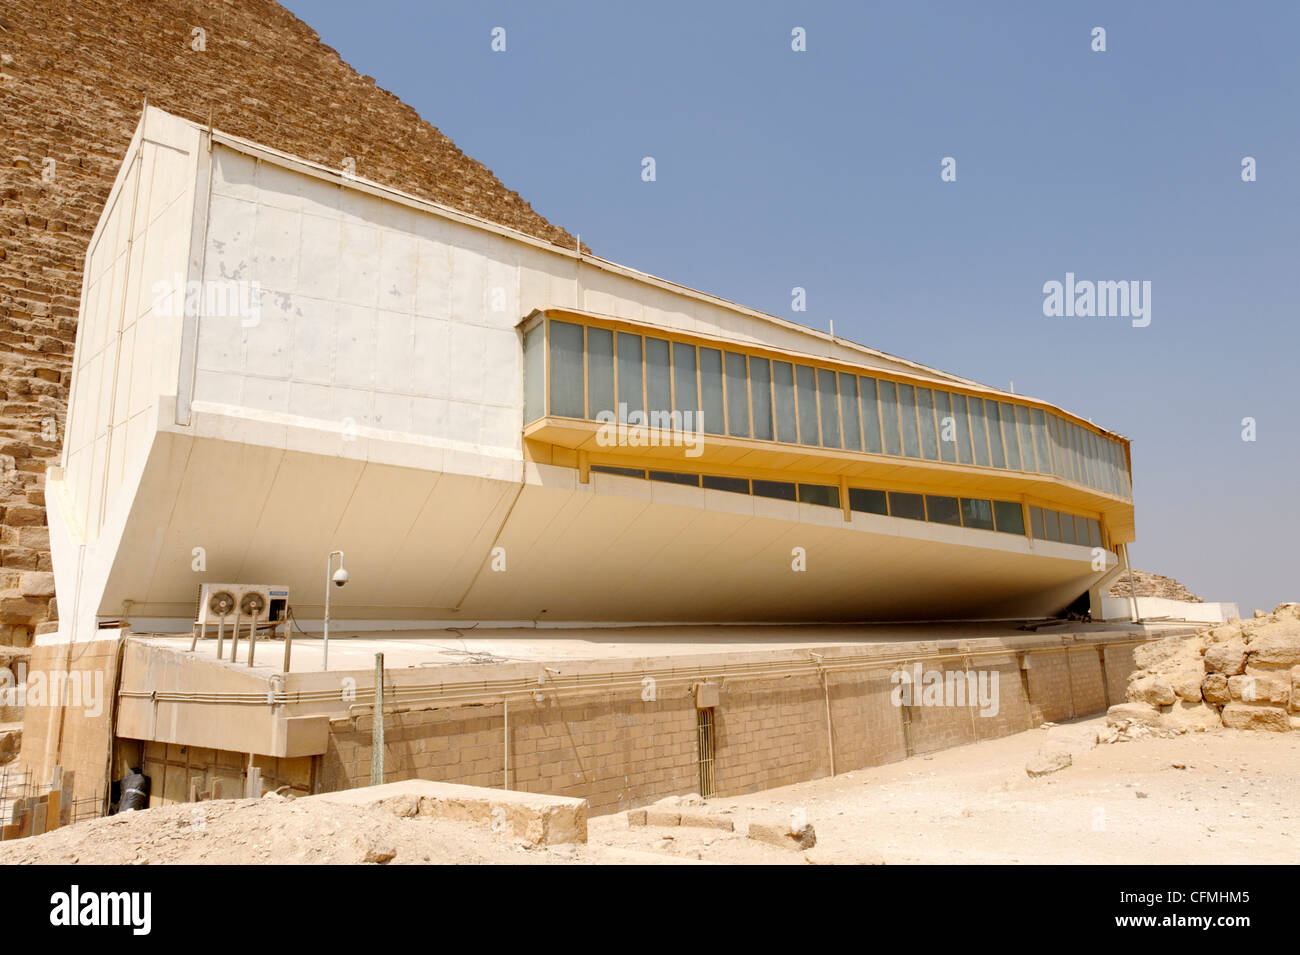 Gizeh. Le Caire. L'Égypte. Vue sur le musée du bateau solaire en forme de gousses à côté du côté sud de la pyramide de Khéops. Il abrite le 5000 Banque D'Images